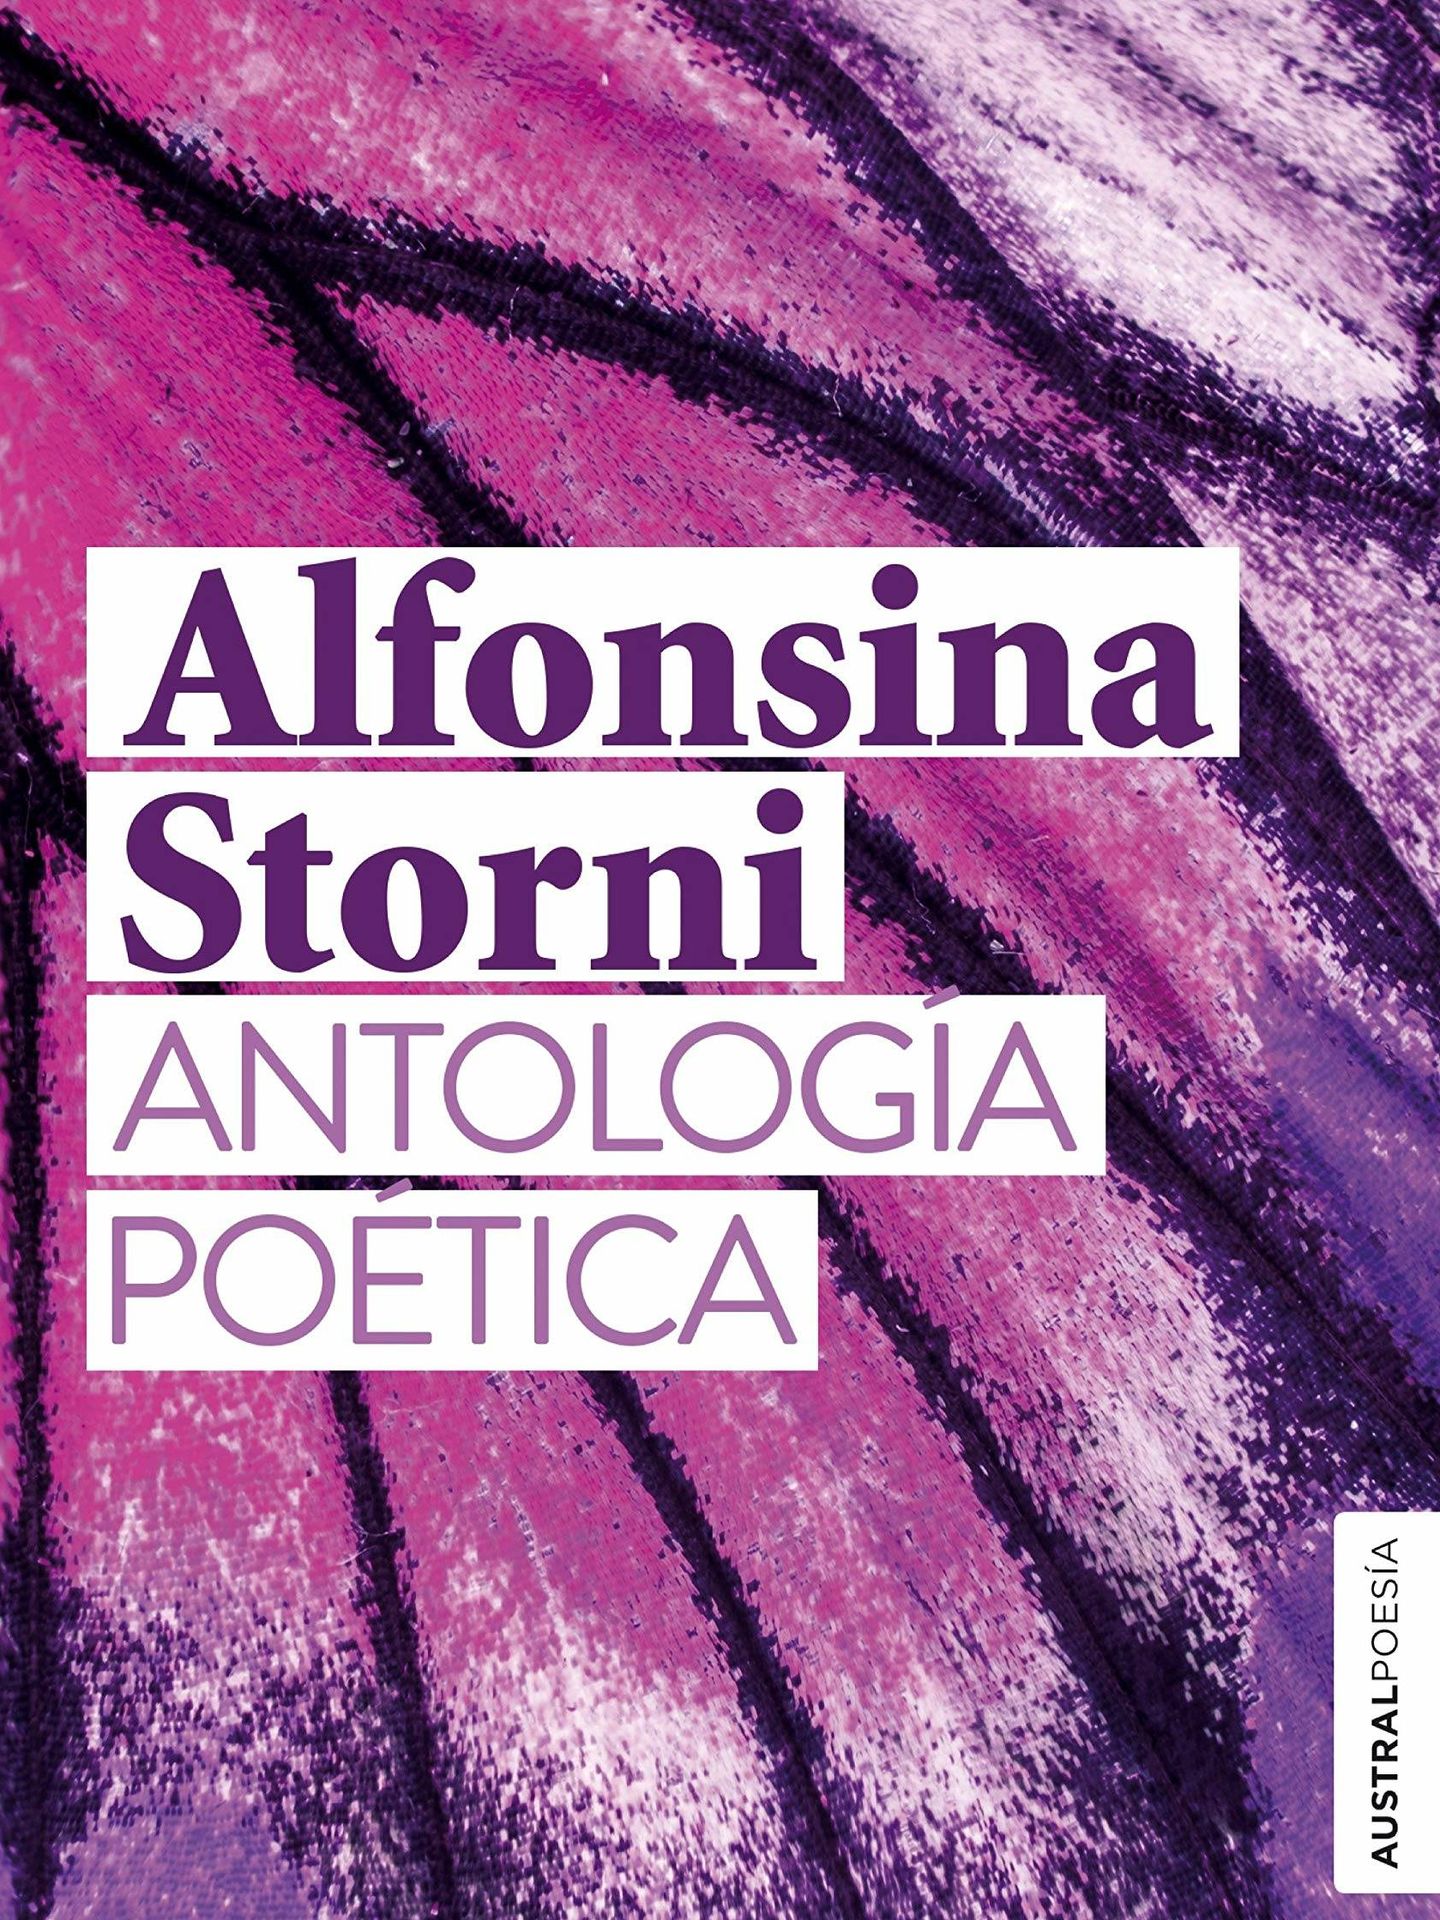 'Antología poética' (Austral).